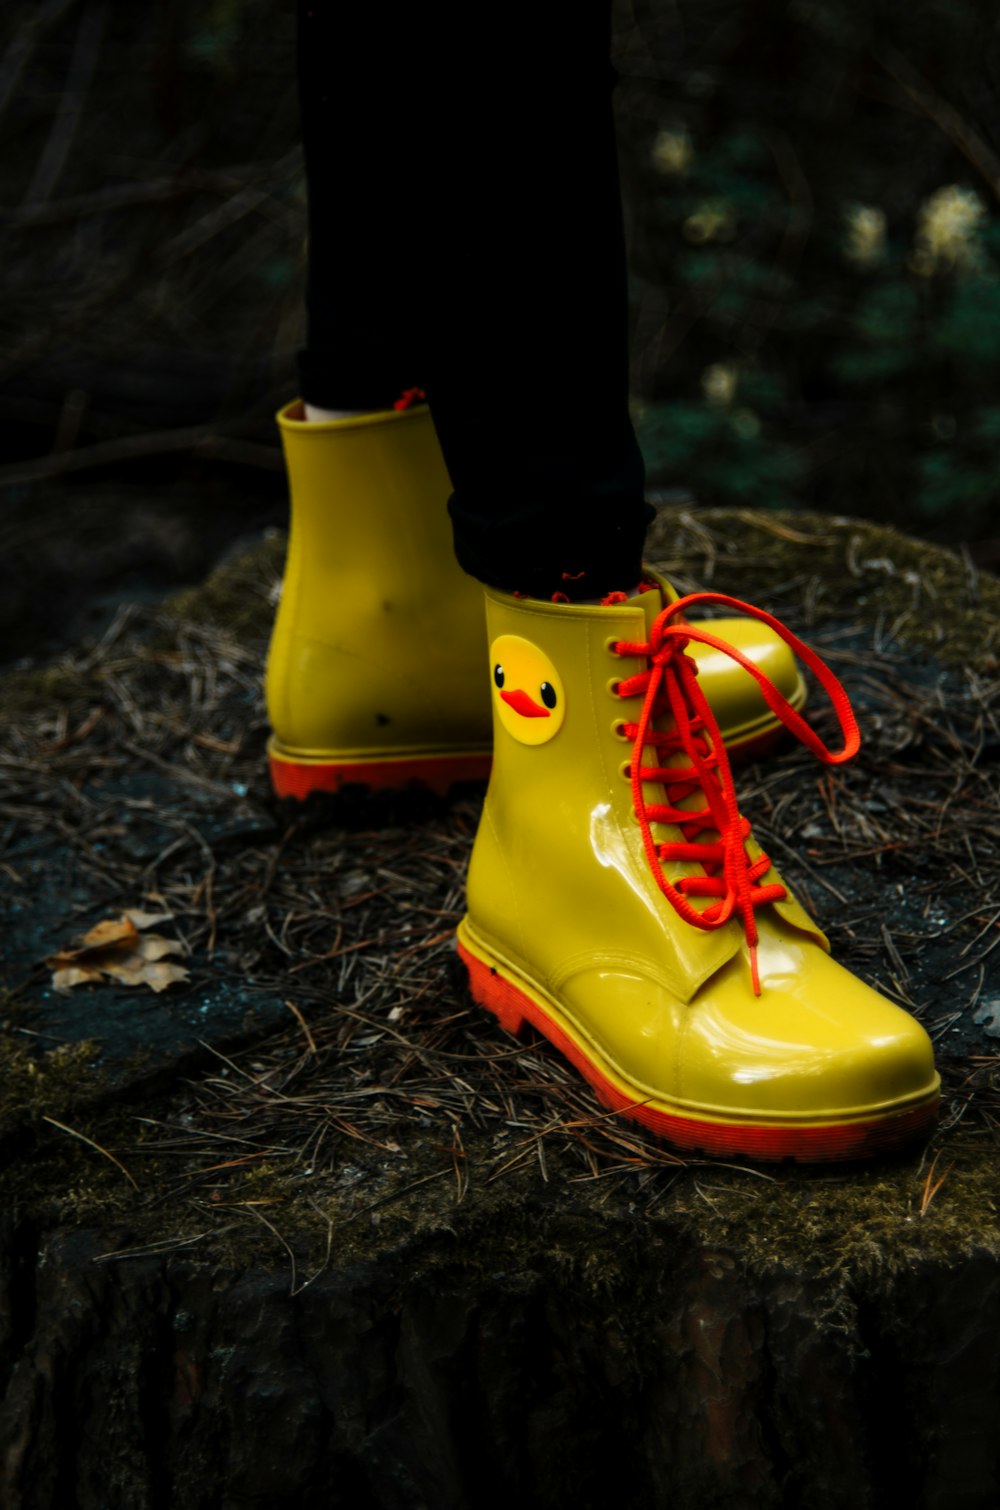 Foto Una persona con botas de lluvia amarillas con cordones rojos – Imagen  Zapato gratis en Unsplash